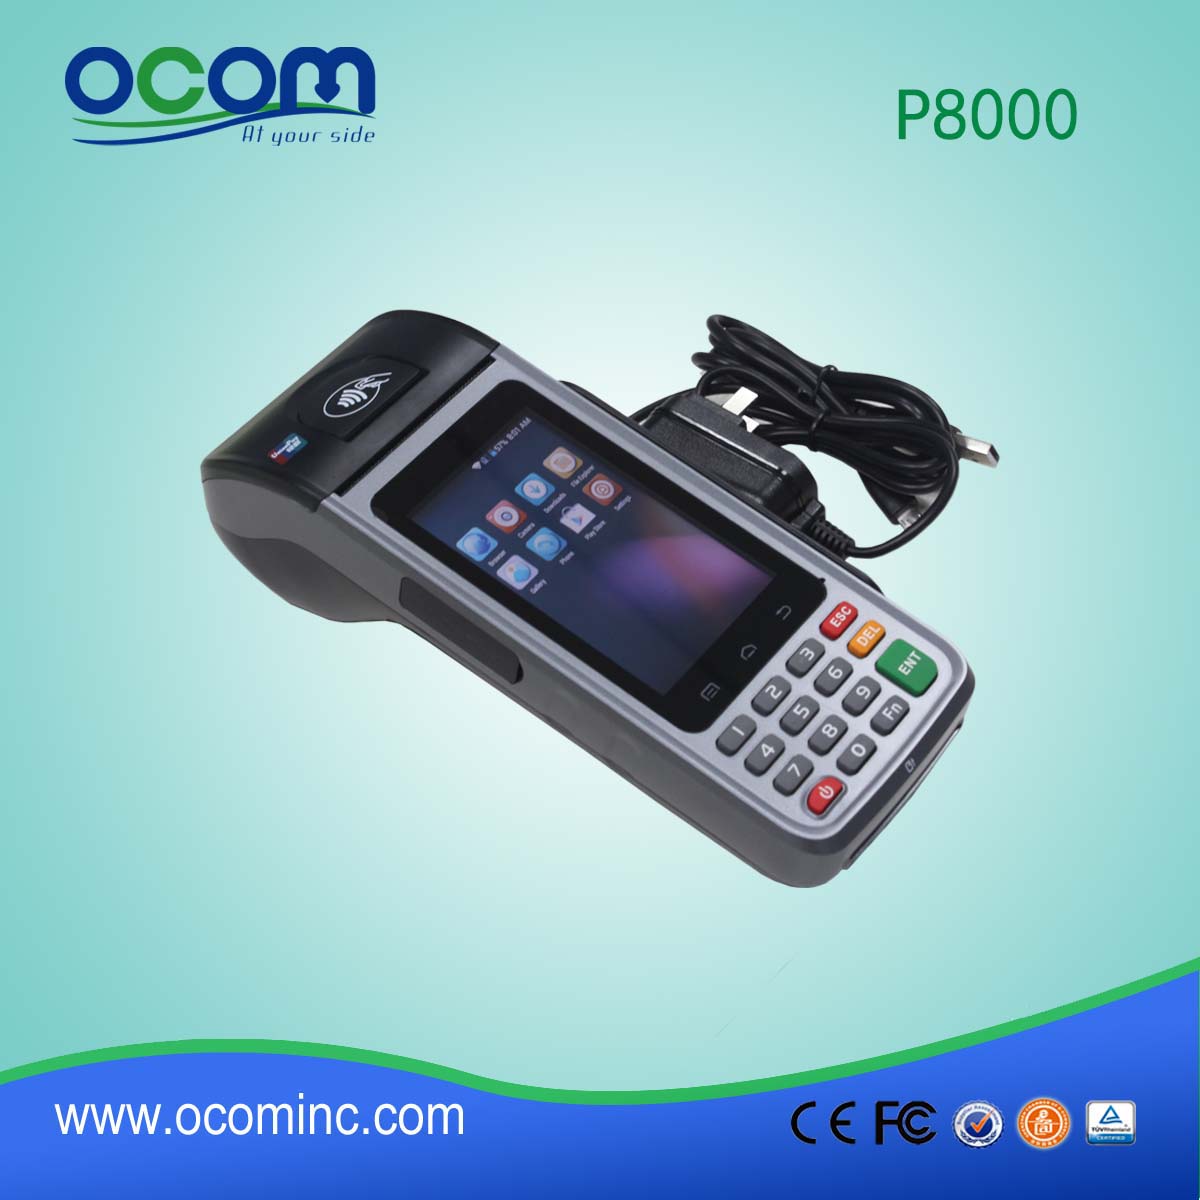 ηλεκτρονικών φορολογικών ταμειακών μηχανών για P8000 σύστημα POS